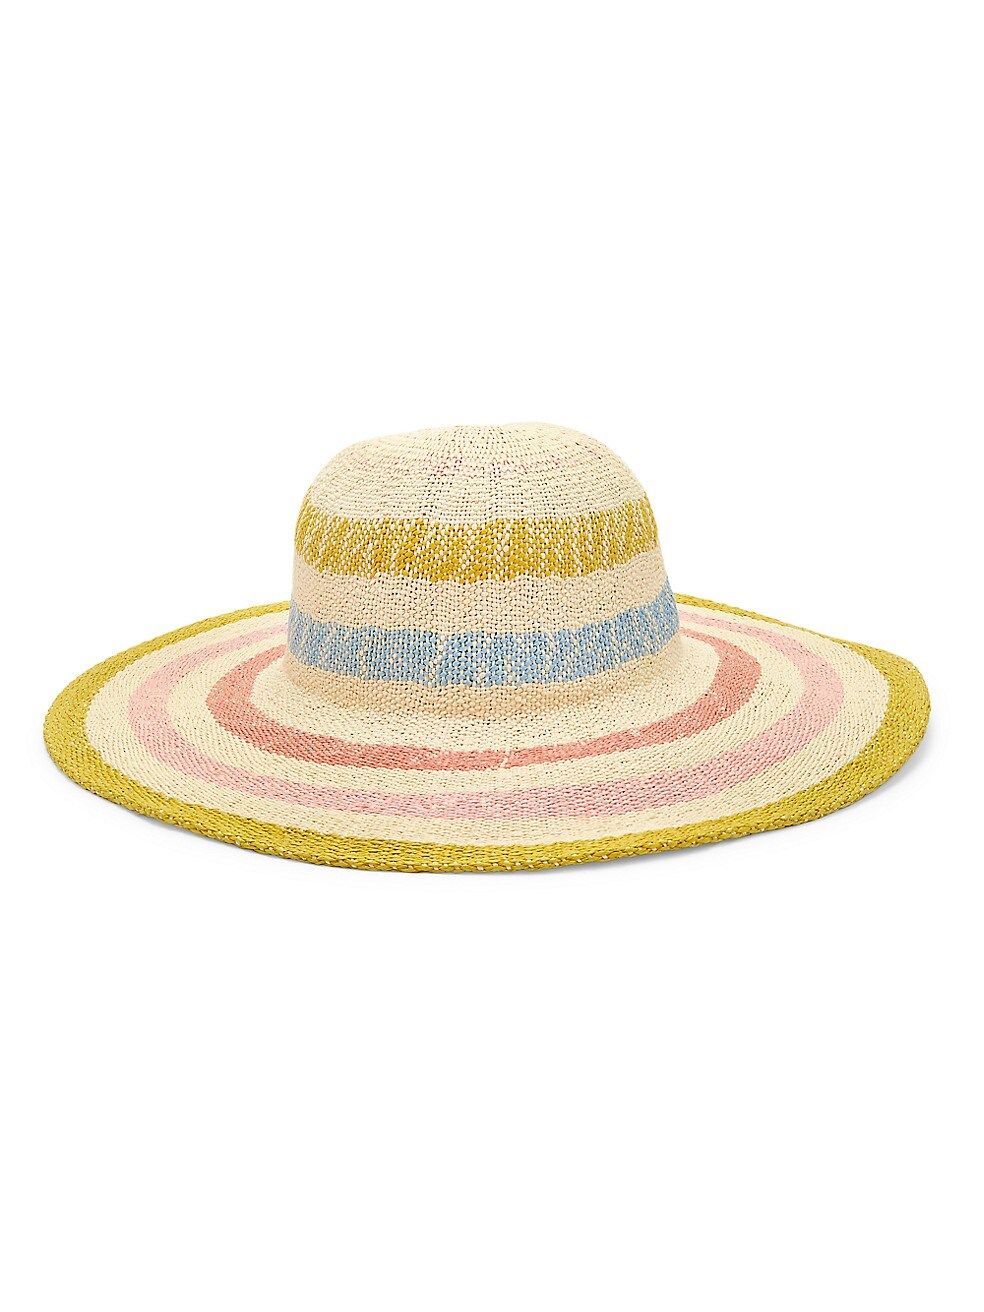 Sun Hat FashionABC Unisex Straw Fedora Hat Beach Hat for Summer